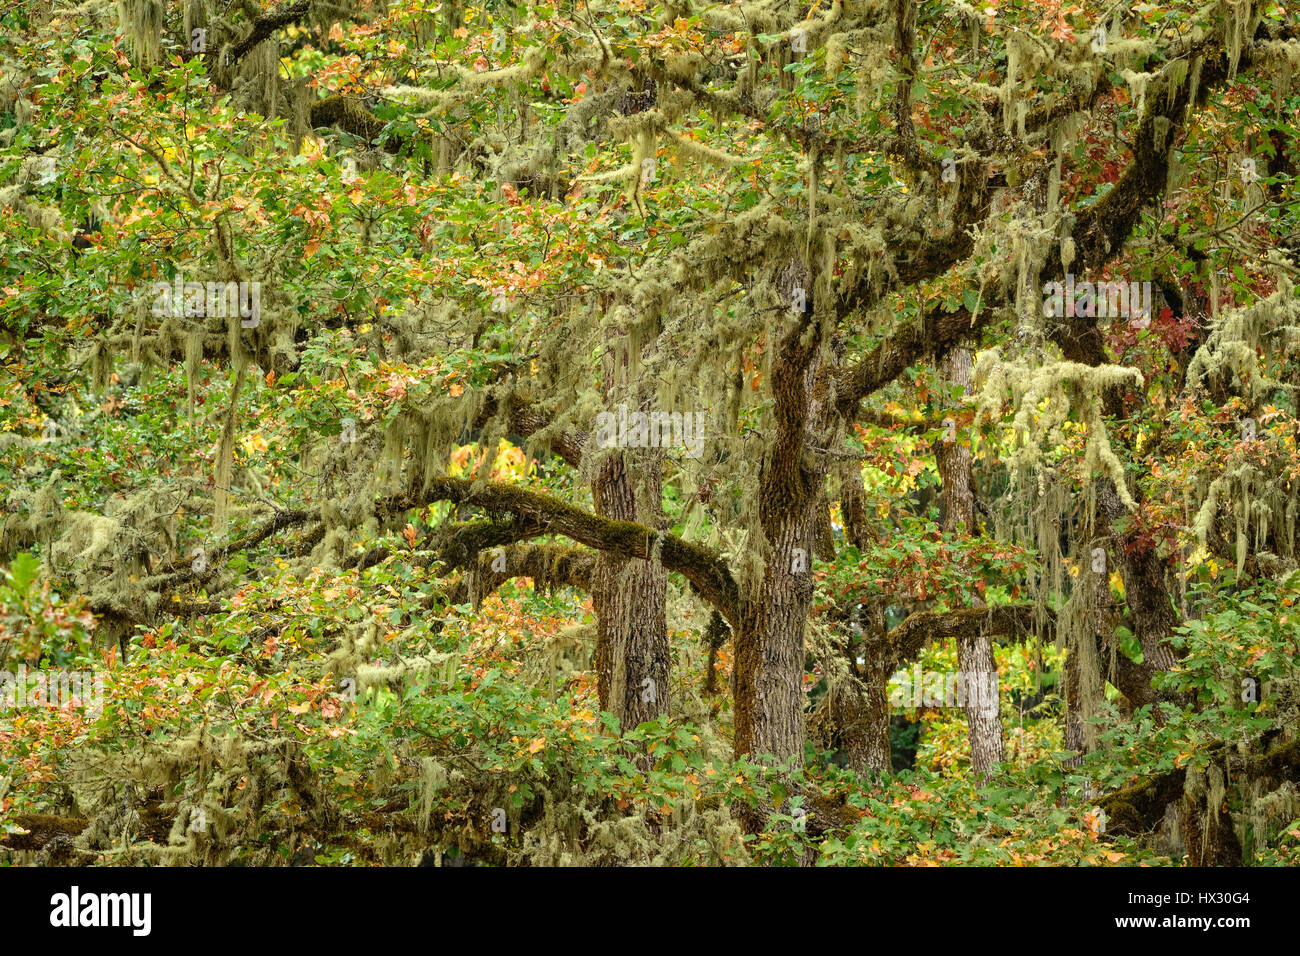 Oregon White Oak trees; Mount Pisgah Arboretum, Willamette Valley, Oregon. Stock Photo